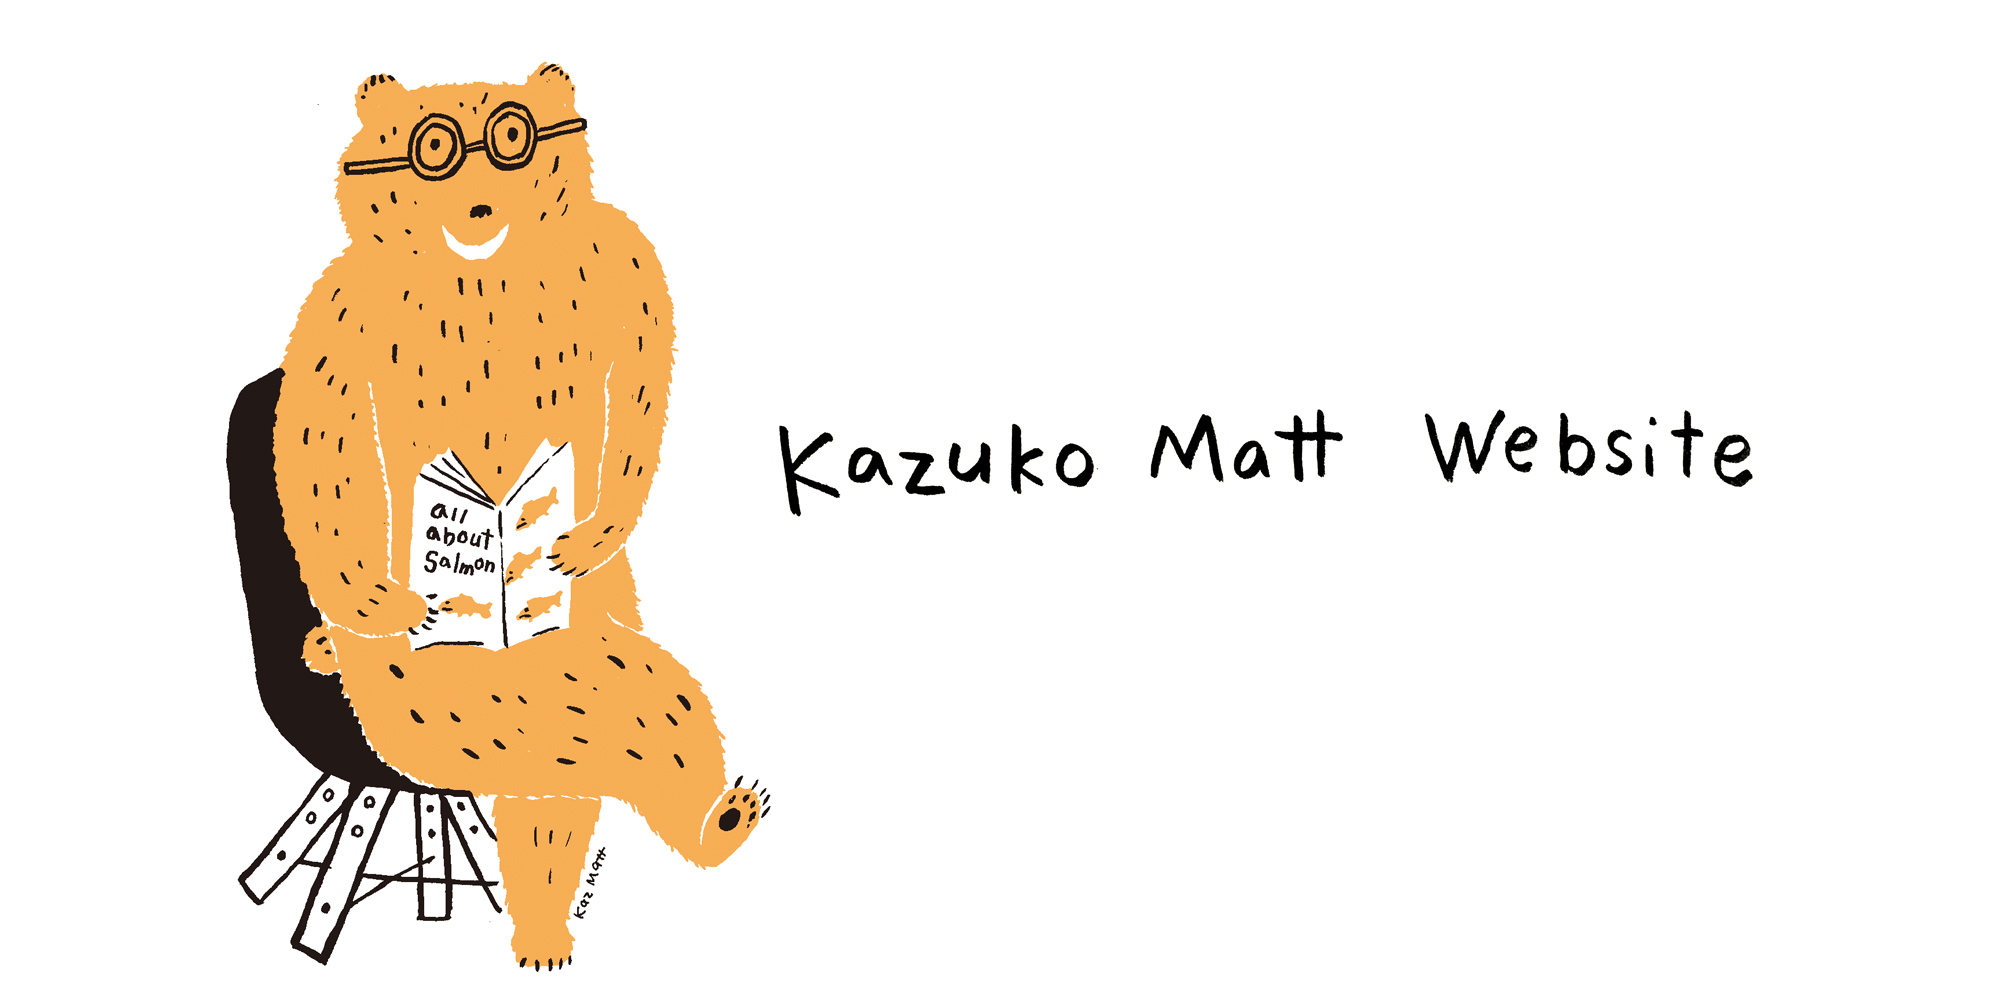 Kazuko Matt Website